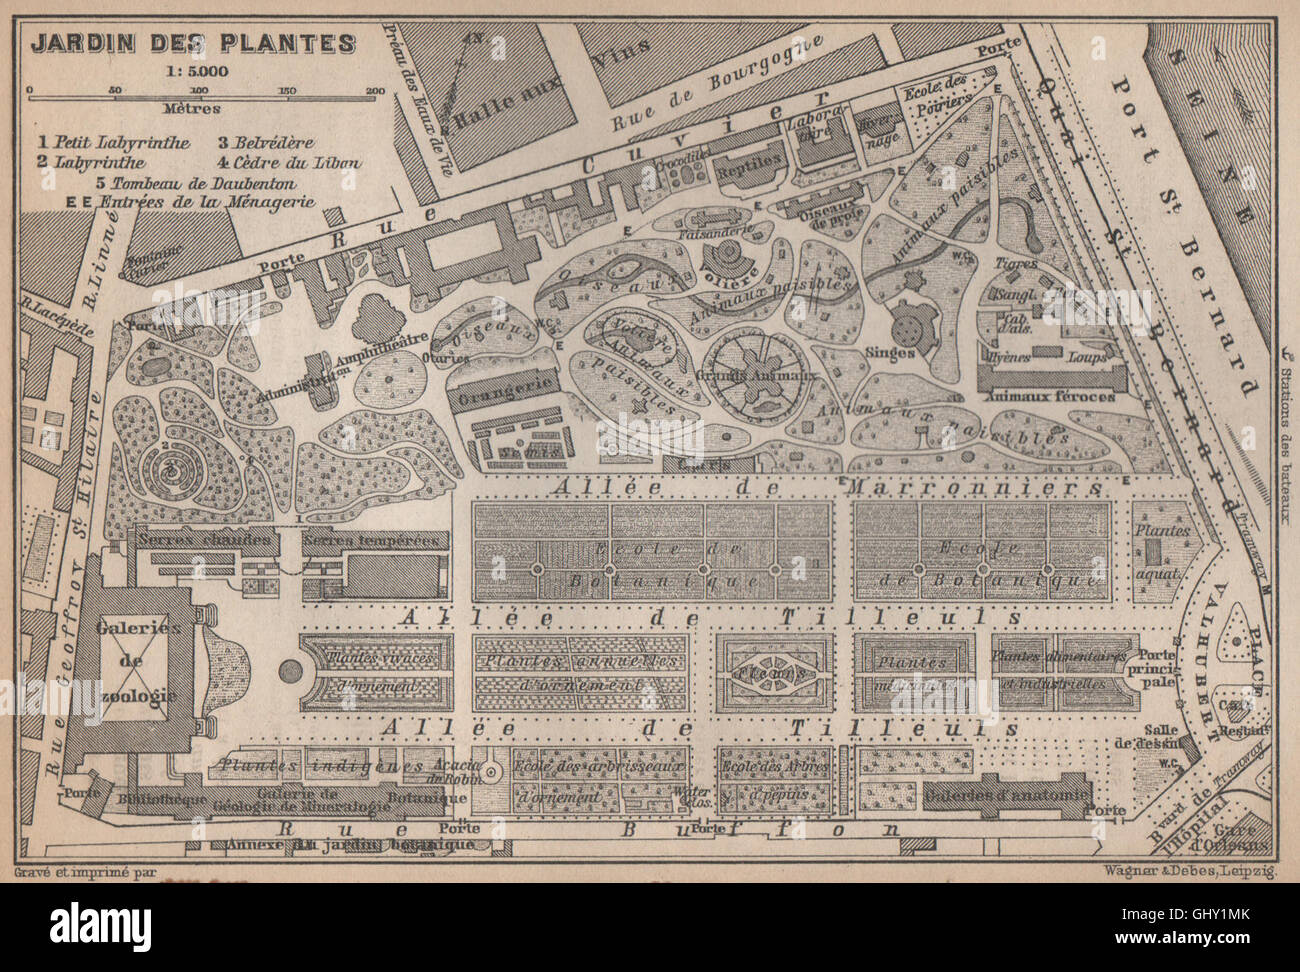 JARDIN DES PLANTES ground plan. Paris 5e carte. BAEDEKER, 1898 antique map  Stock Photo - Alamy